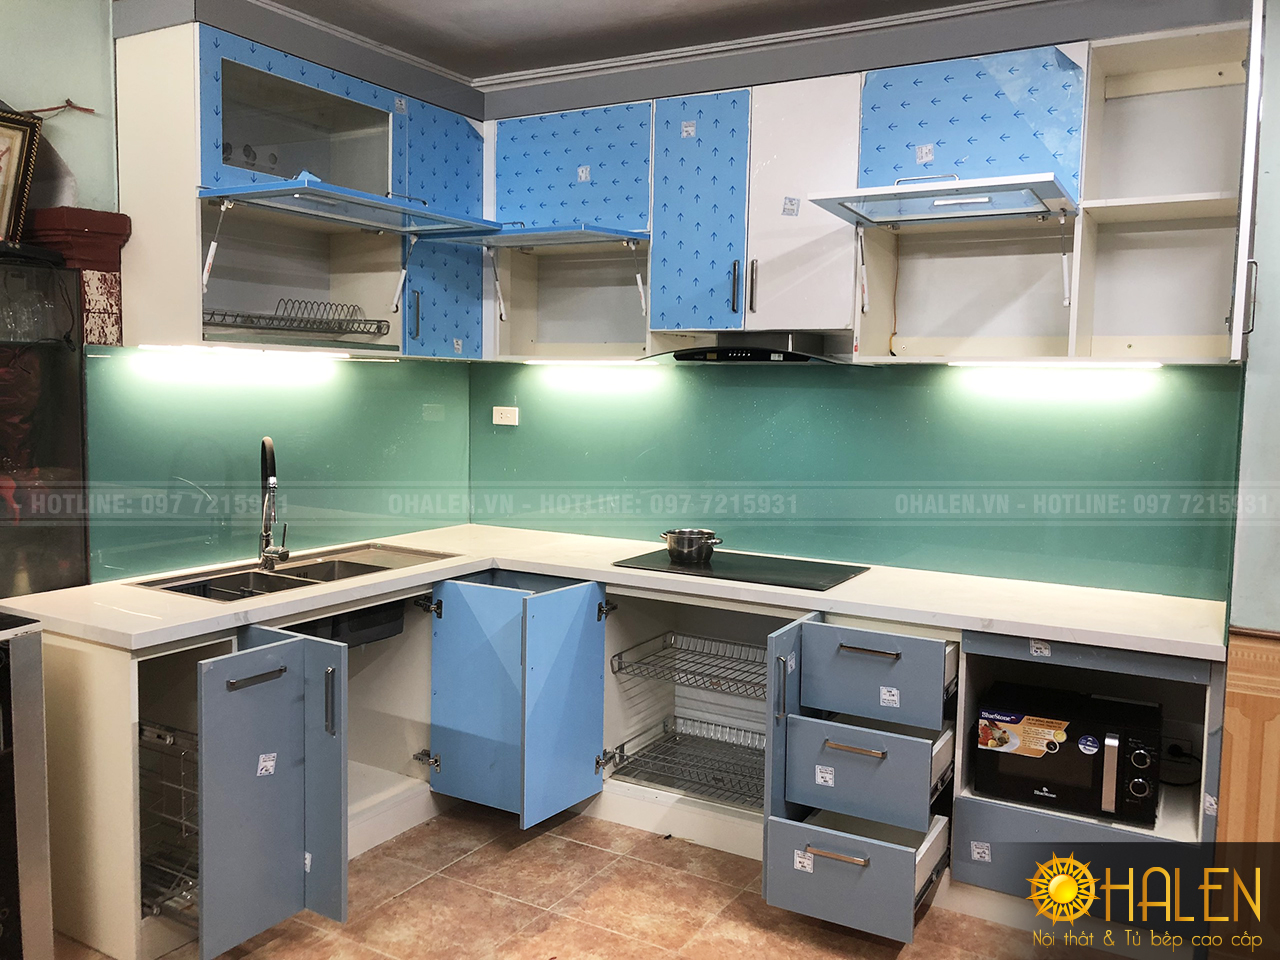 Bộ tủ bếp được OHALEN thiết kế hiện đại, trẻ trung và đầy đủ công năng sử dụng